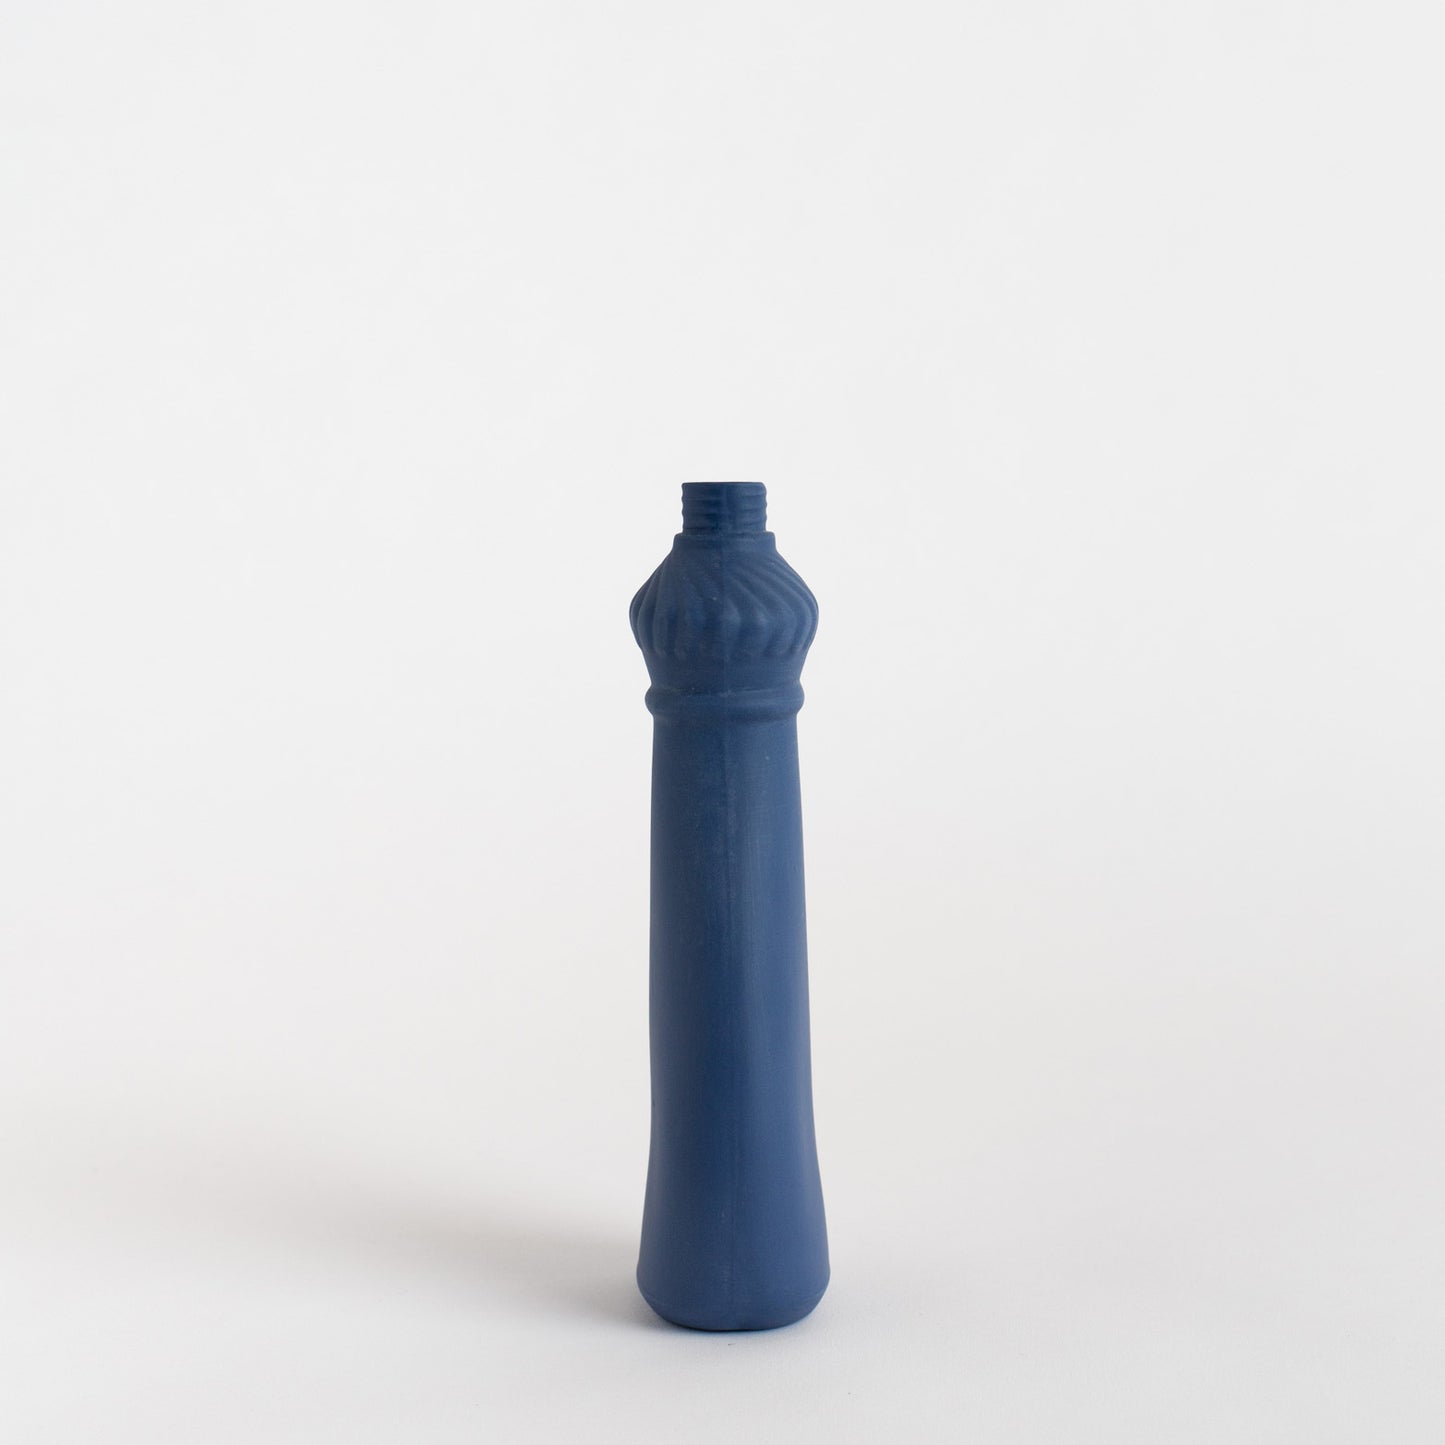 Porcelain Bottle Vase #15 - delft